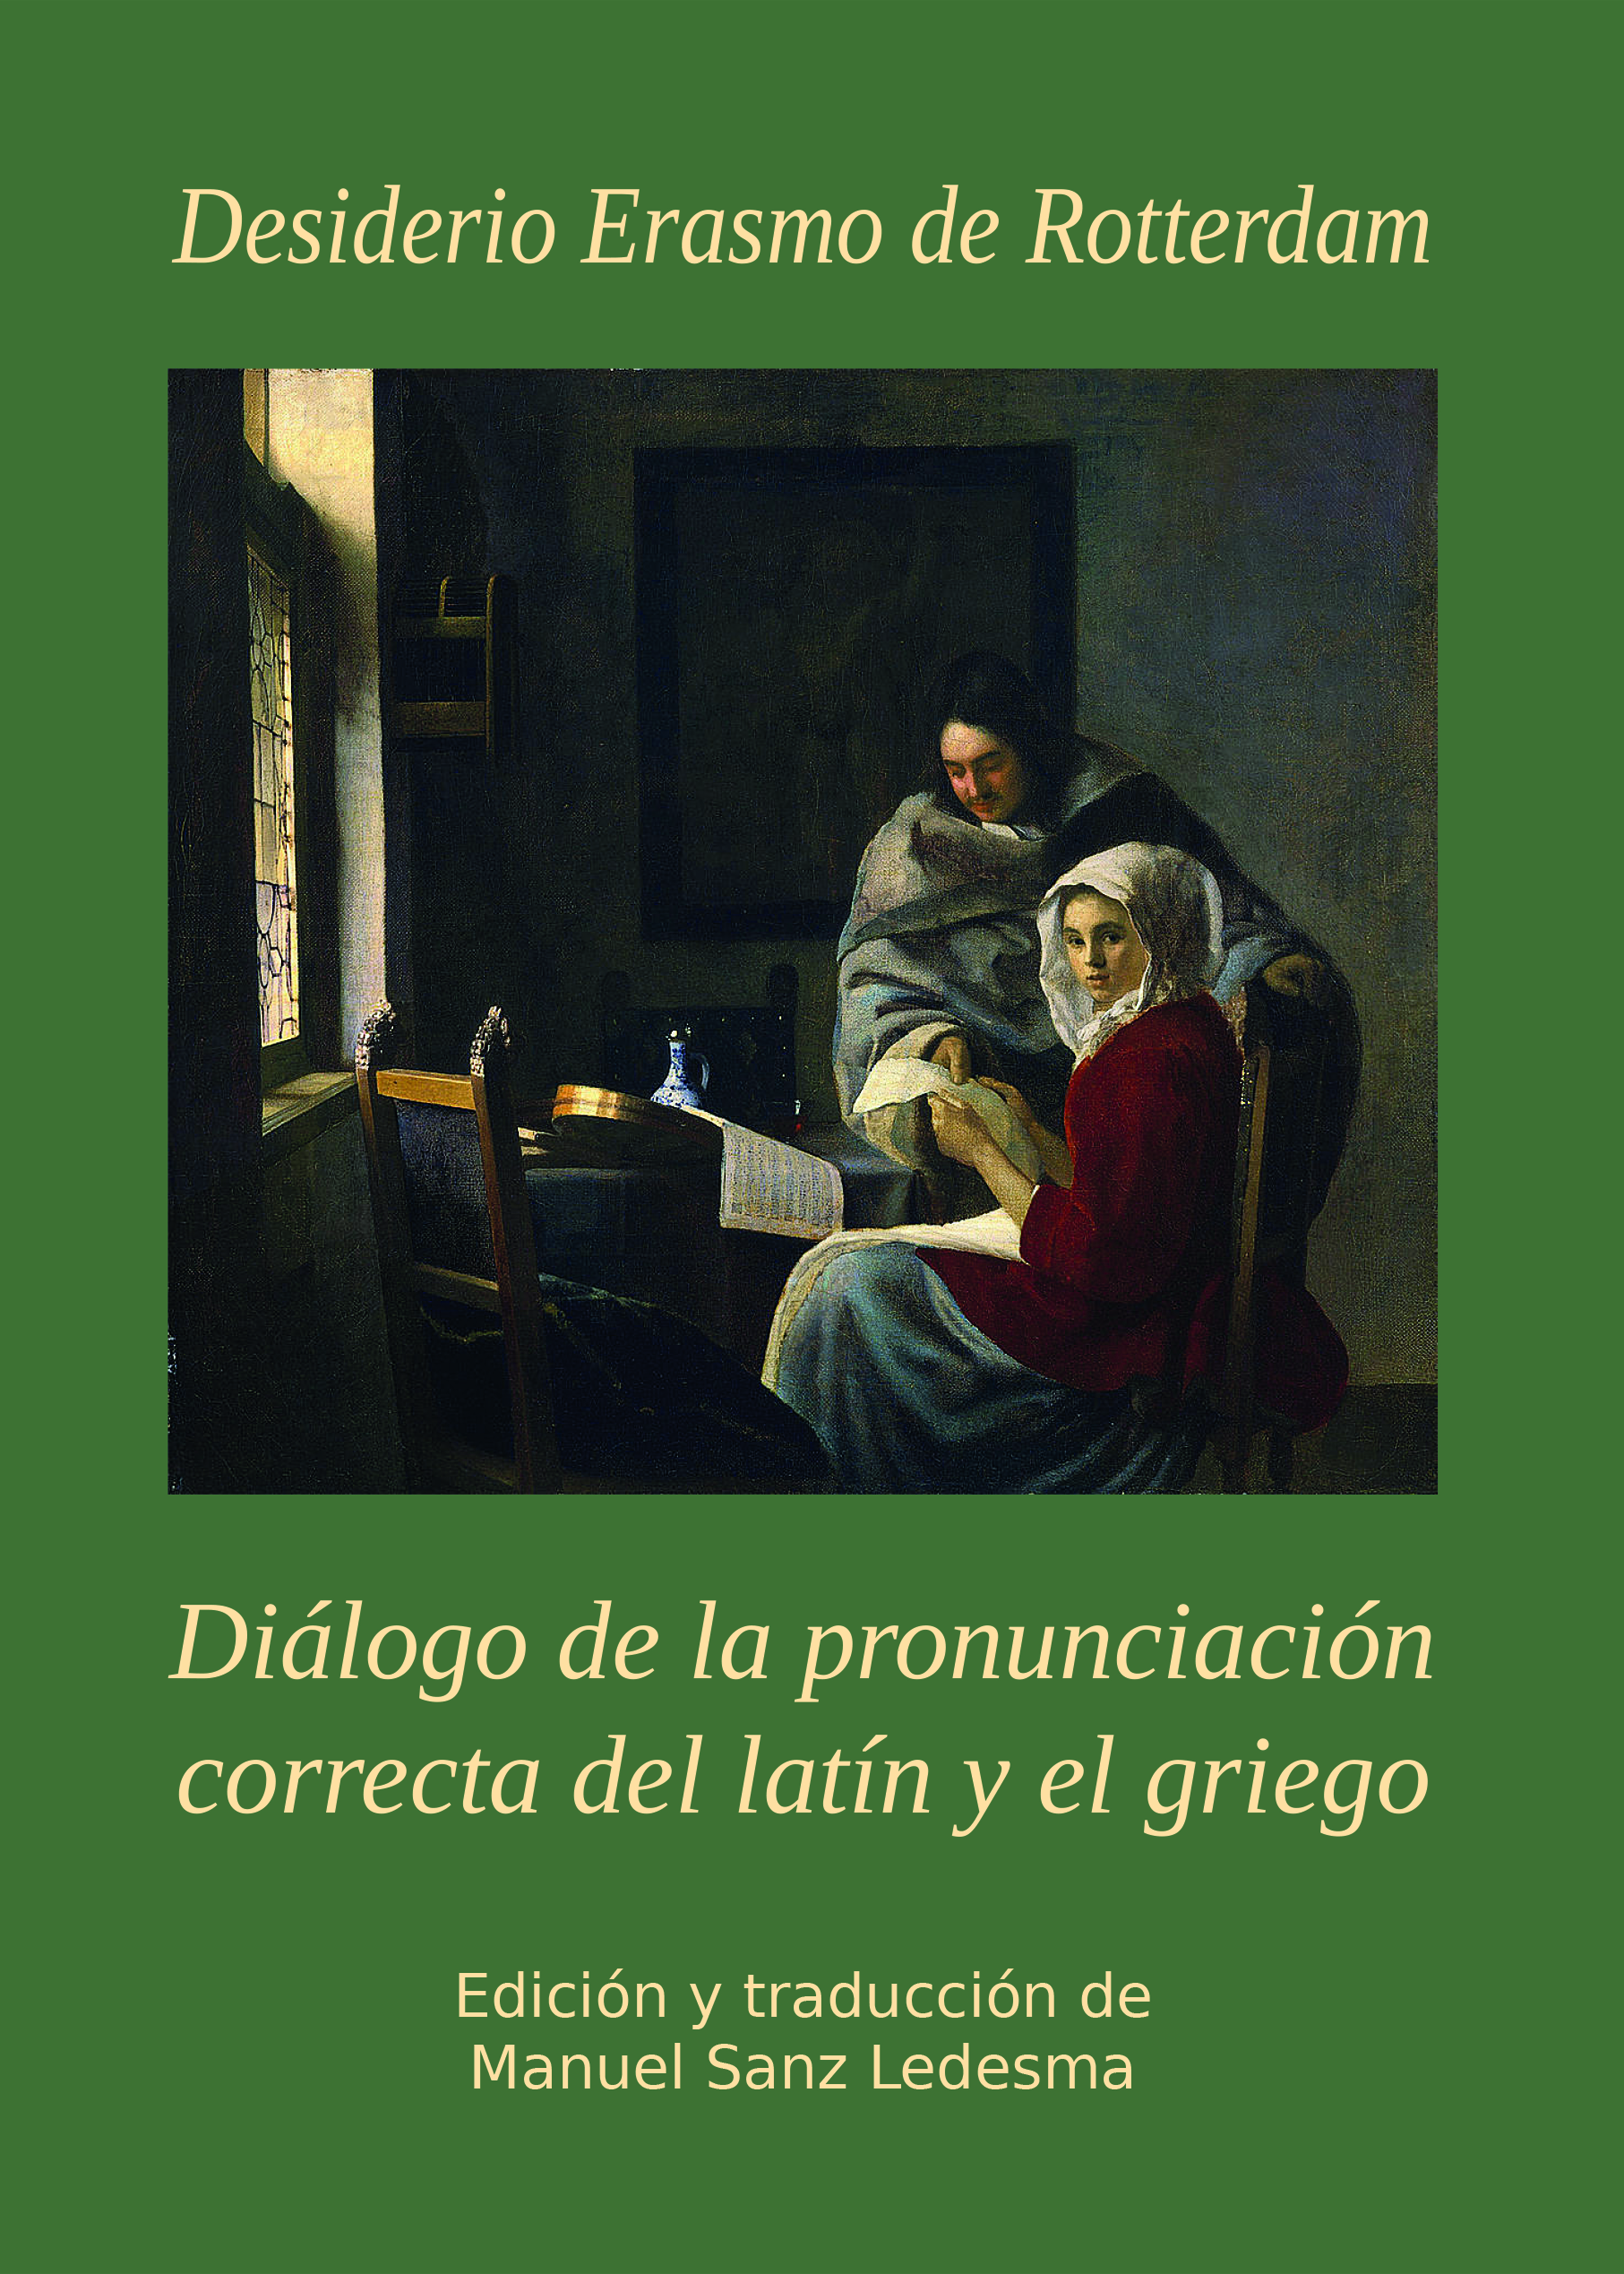 Diálogo de la pronunciación correcta del latín y el griego